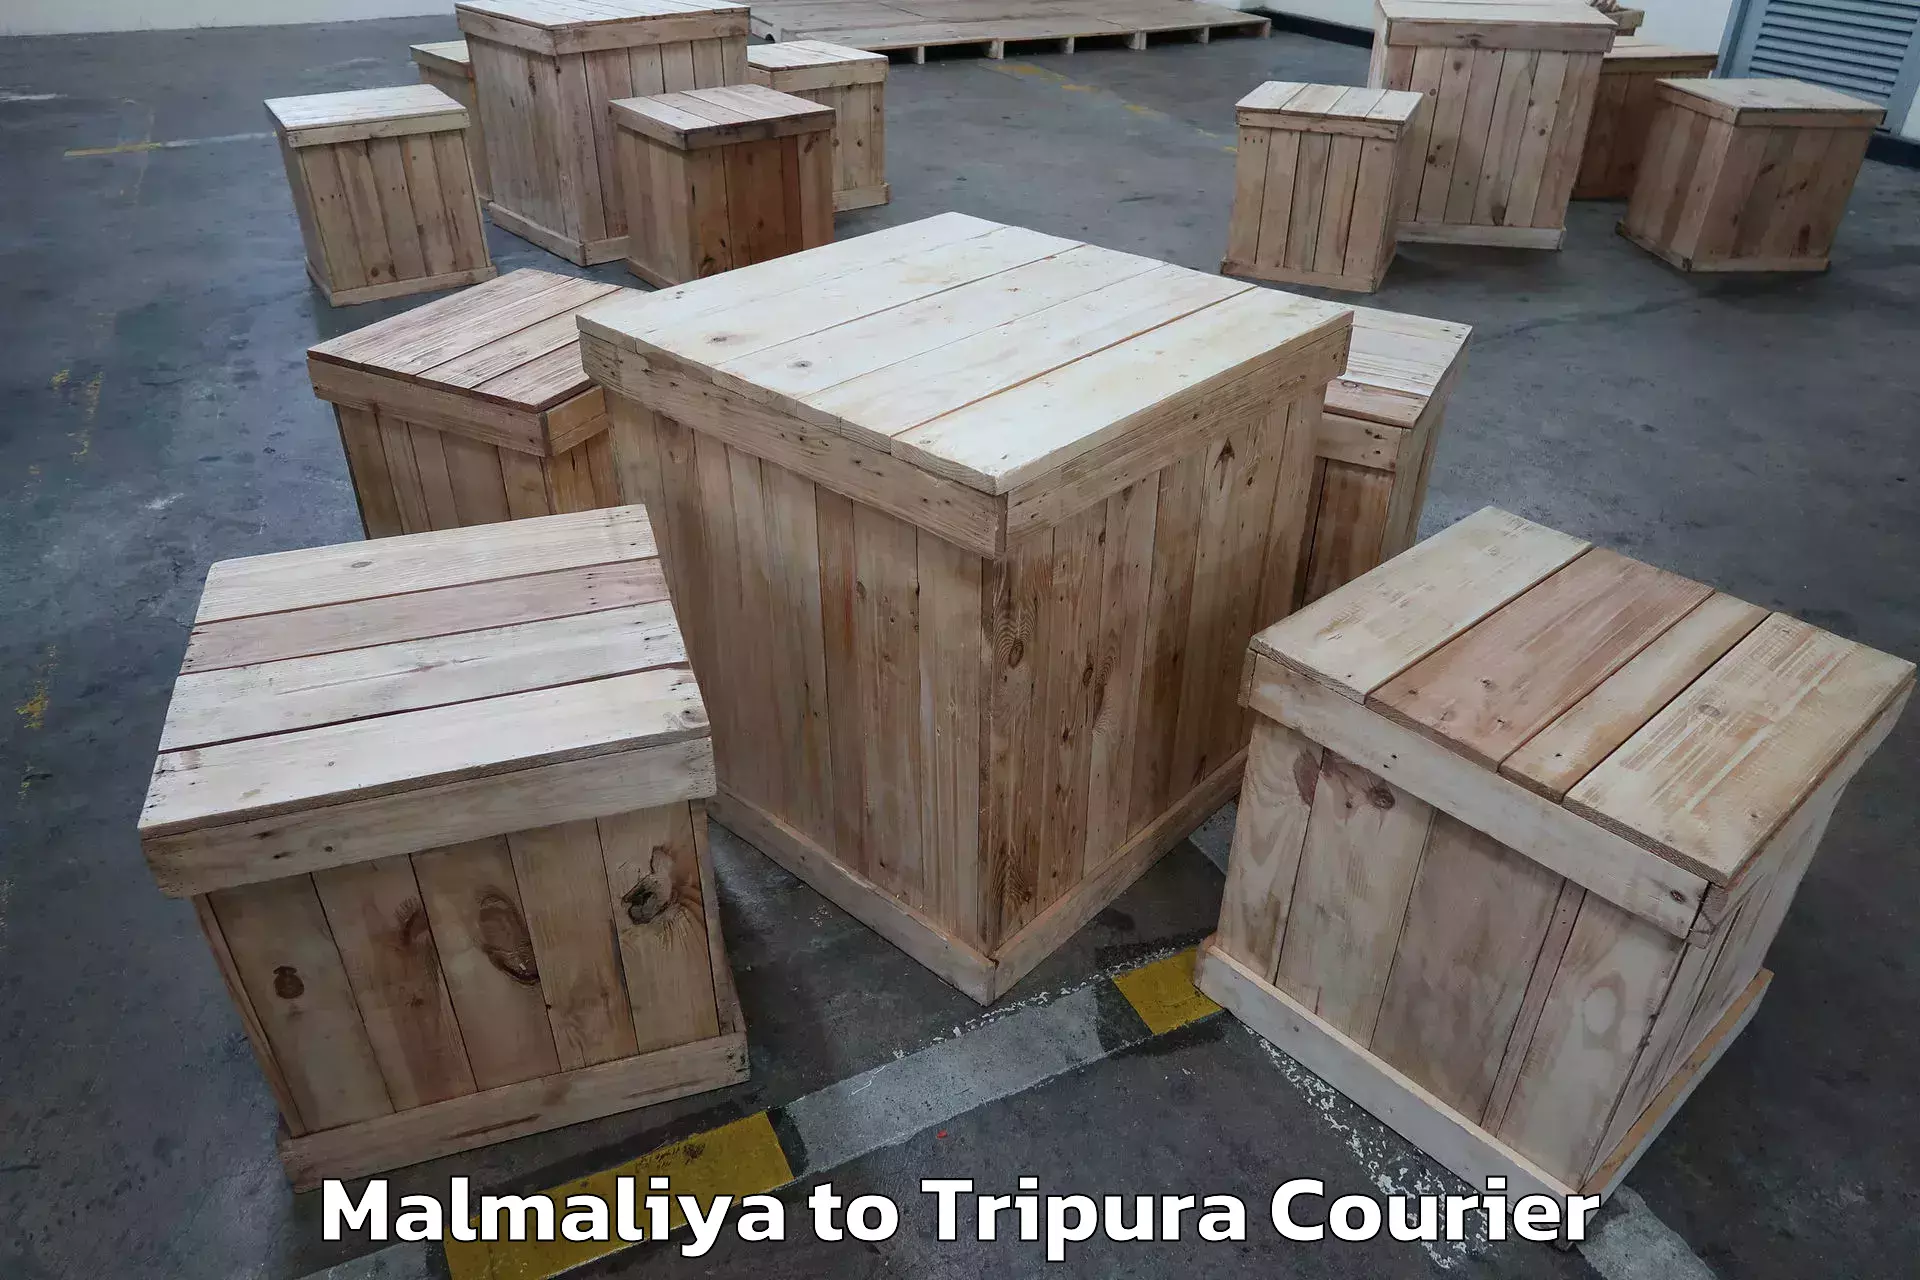 Efficient moving and packing Malmaliya to Udaipur Tripura